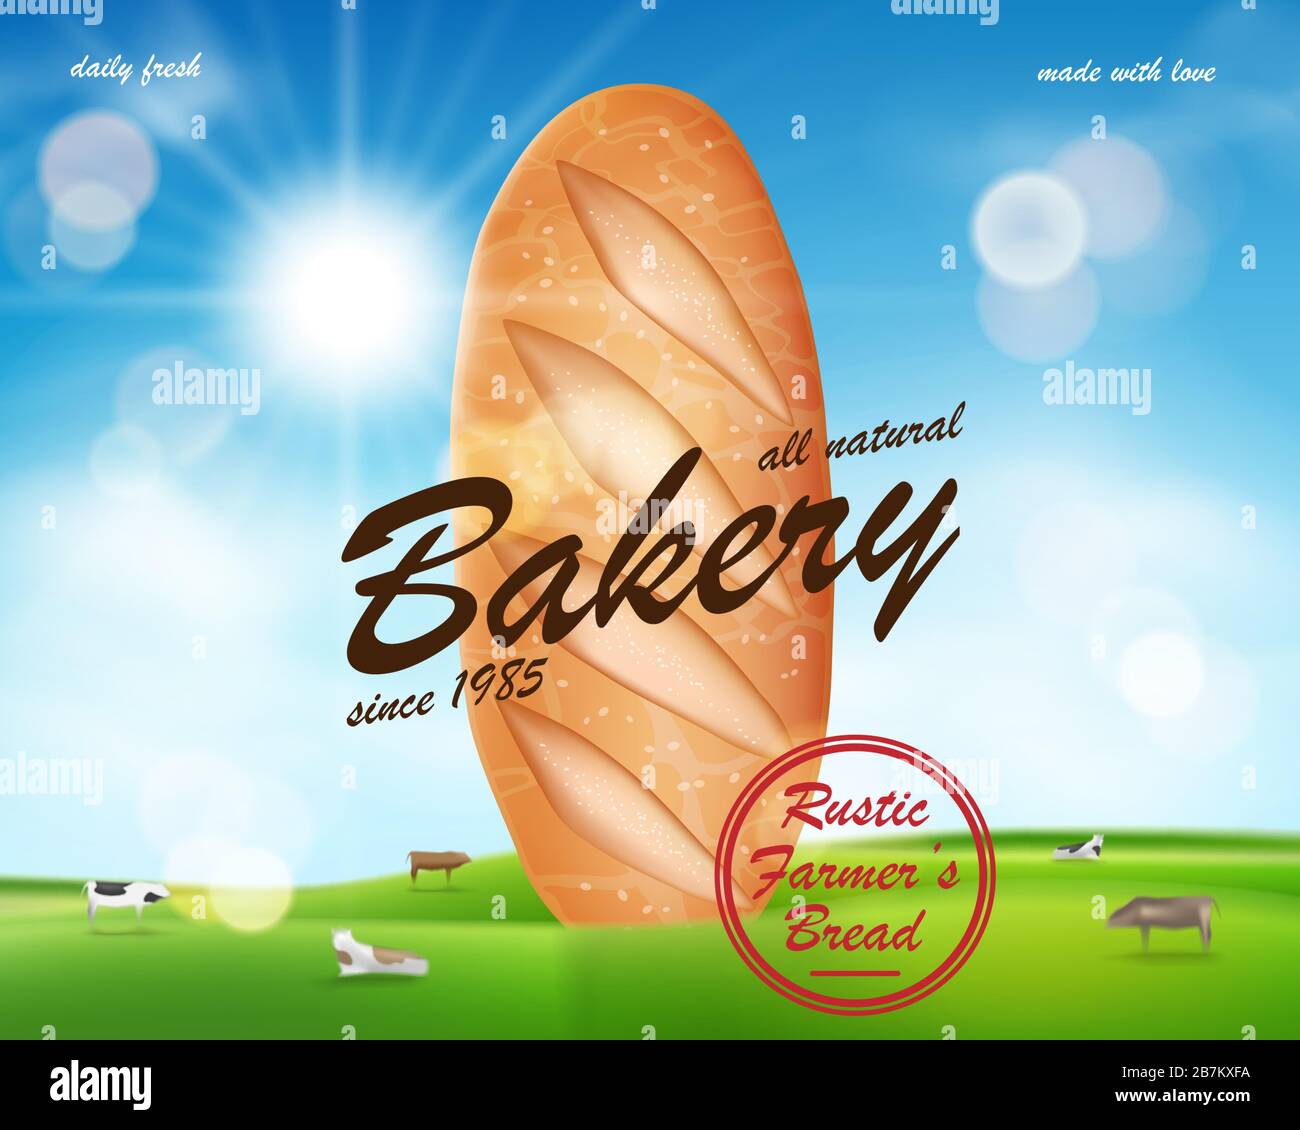 Banner realistico annunci Bakery, delizioso pane francese baguette in campagna con mucche. Banner promozionale per panetteria. Illustrazione vettoriale Illustrazione Vettoriale